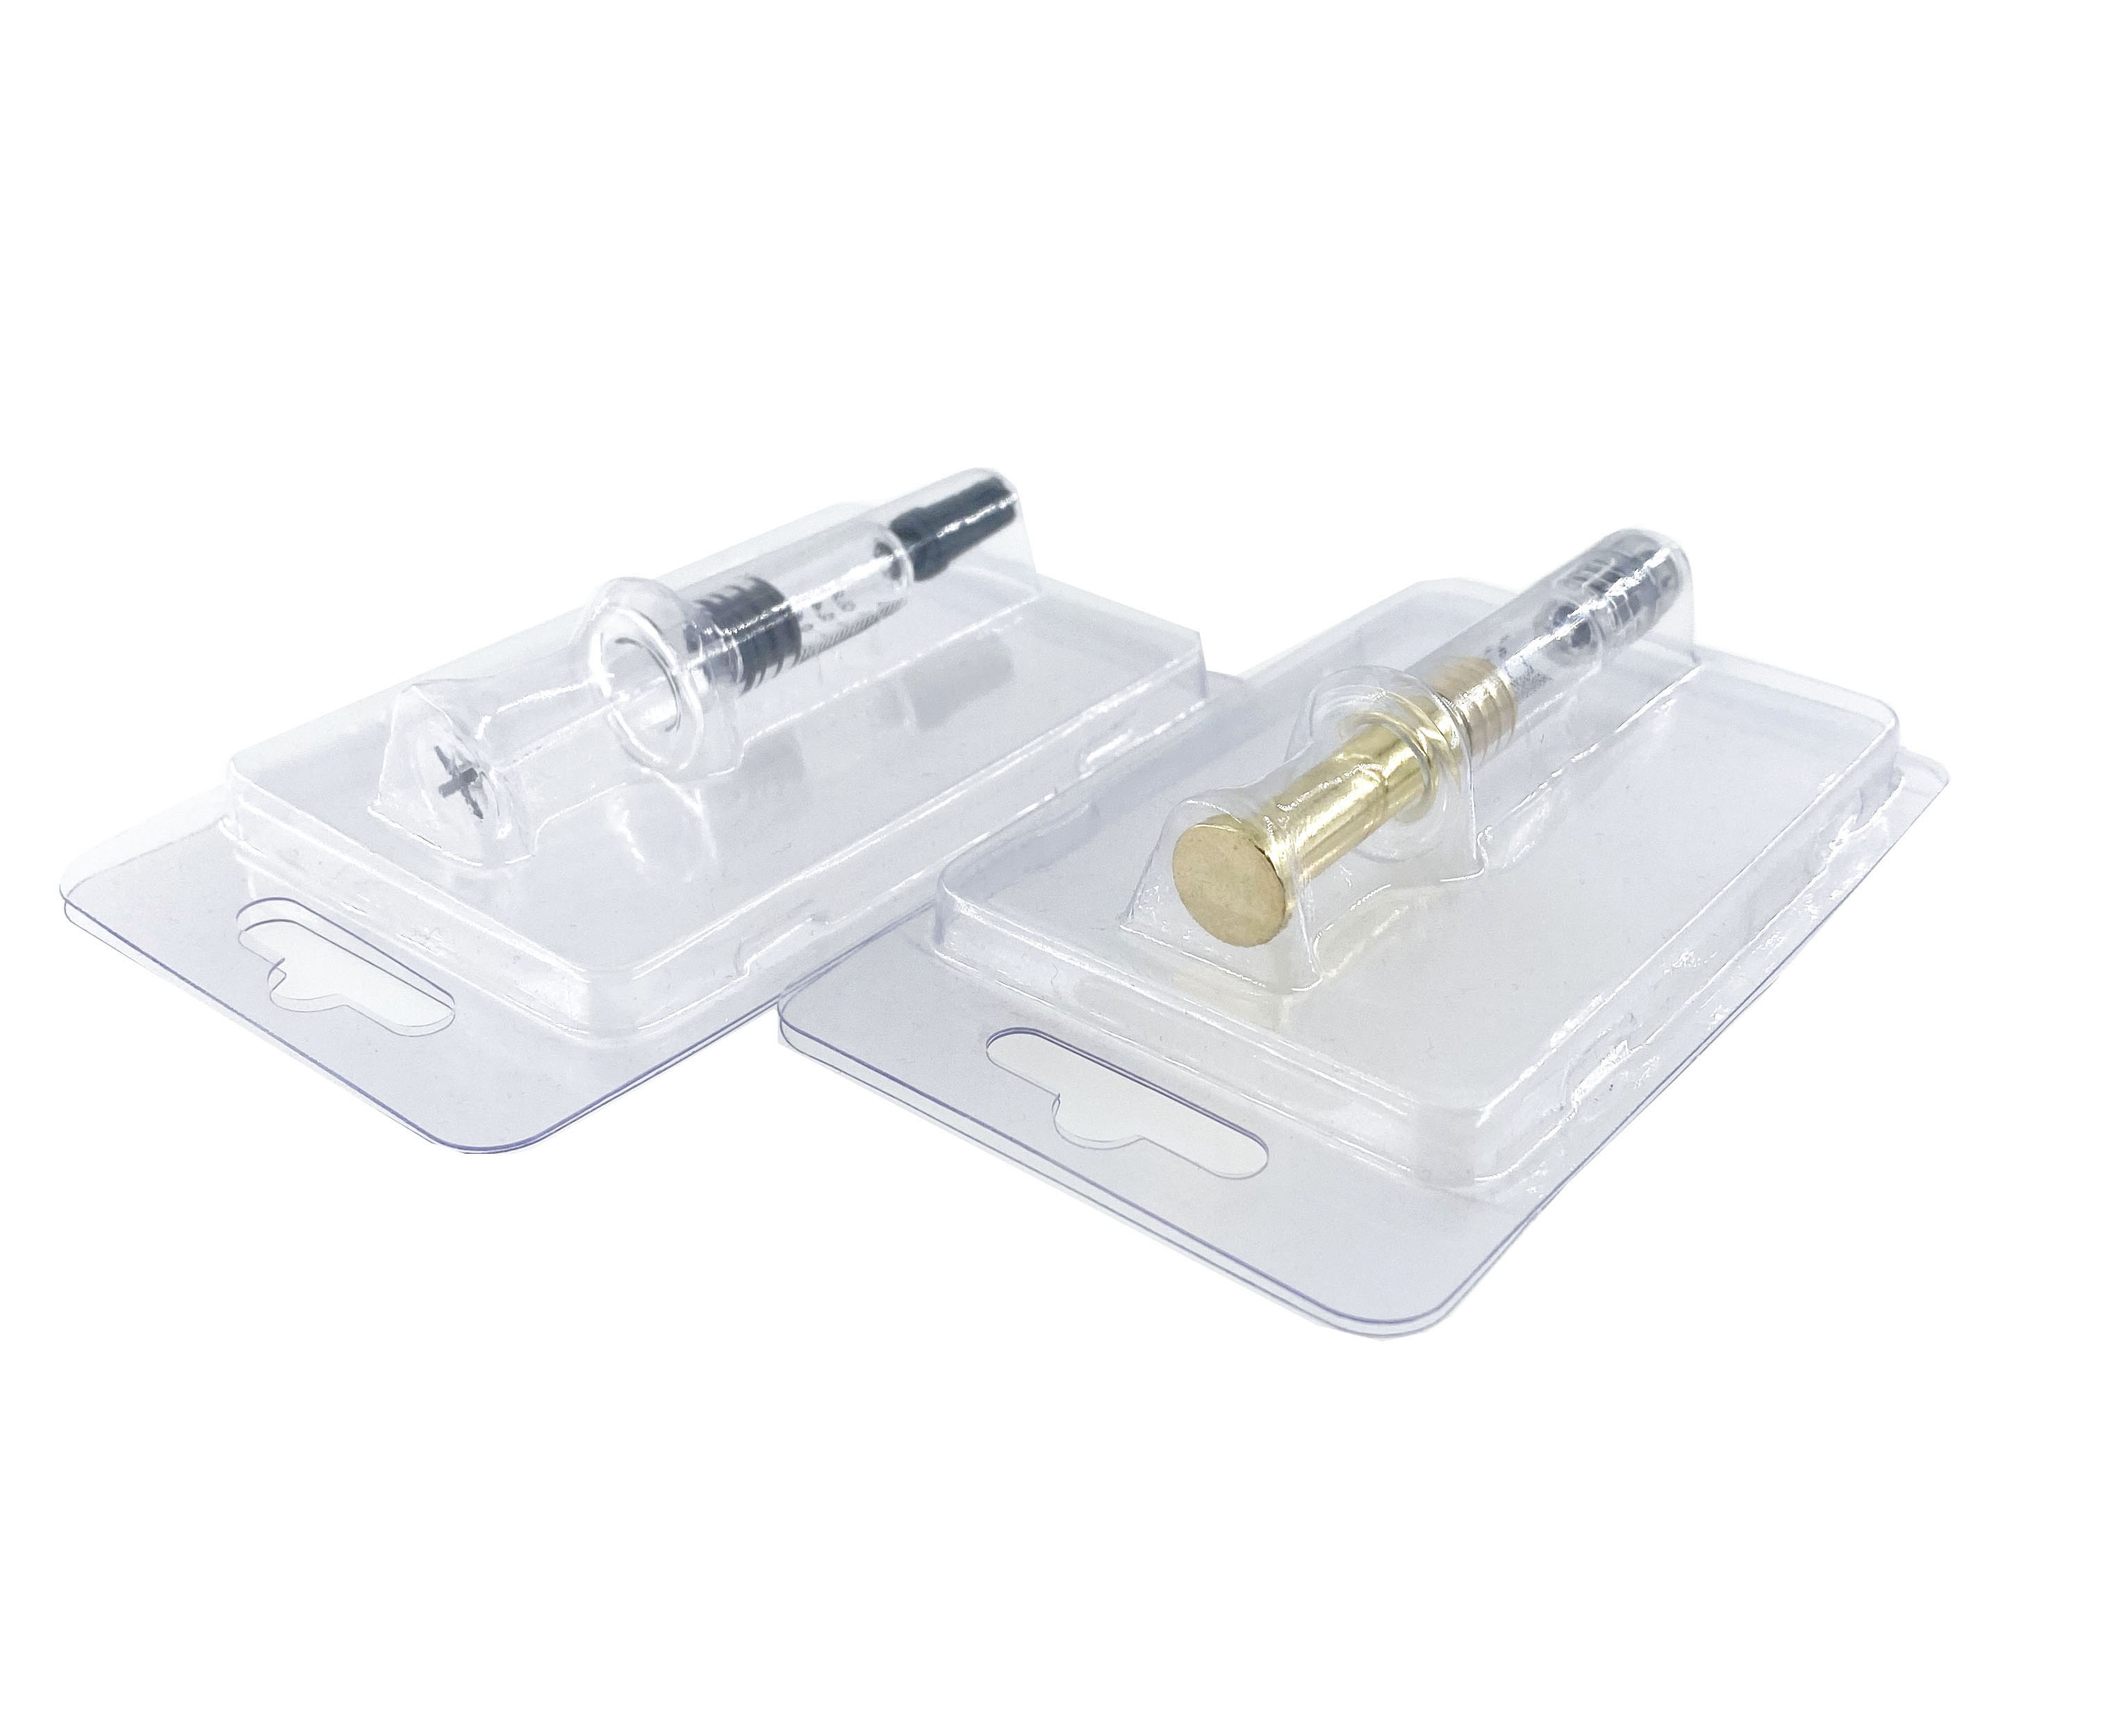 1ml Glass Syringe Clamshell Blister Packs